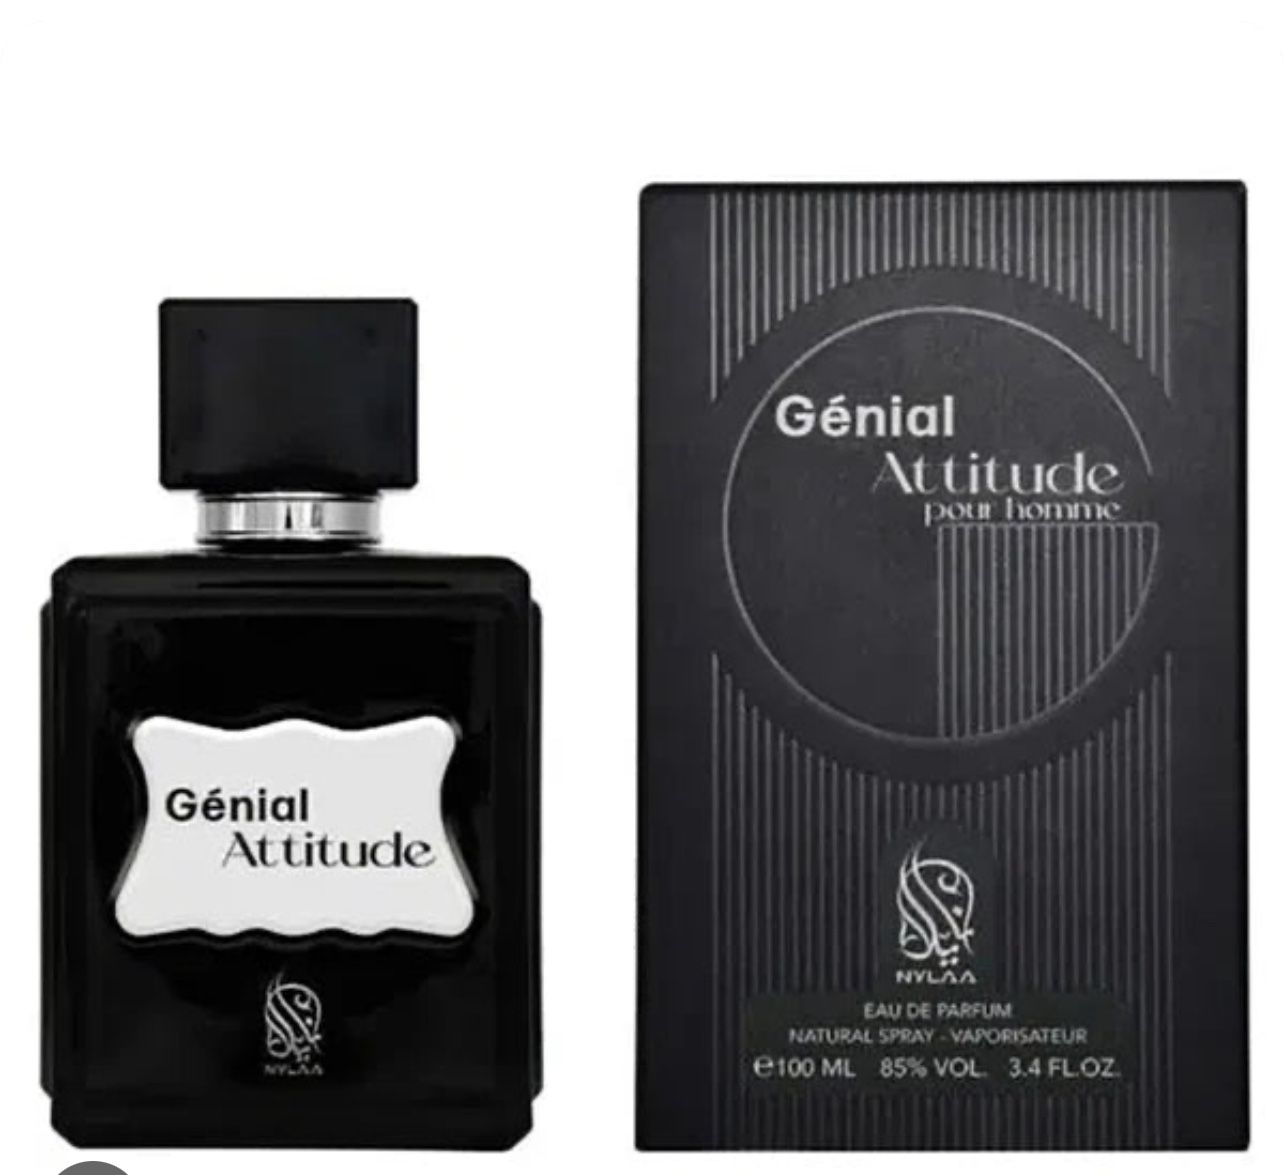 Genial Attitude EDP, Parfum 100 Ml In Black